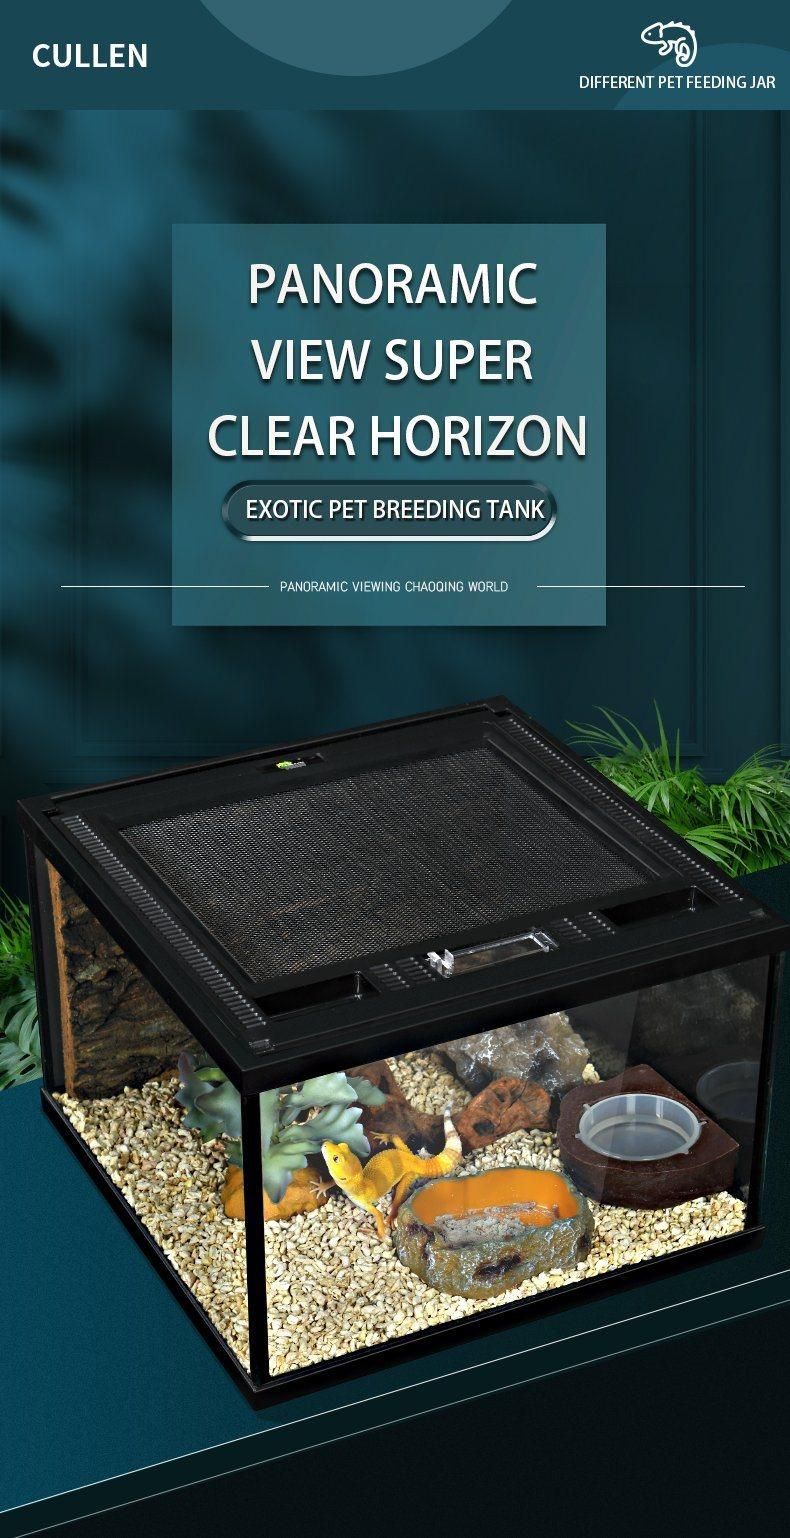 Yee Heating Lamp Glass Turtle Tank Climbing Pet Tank Suit